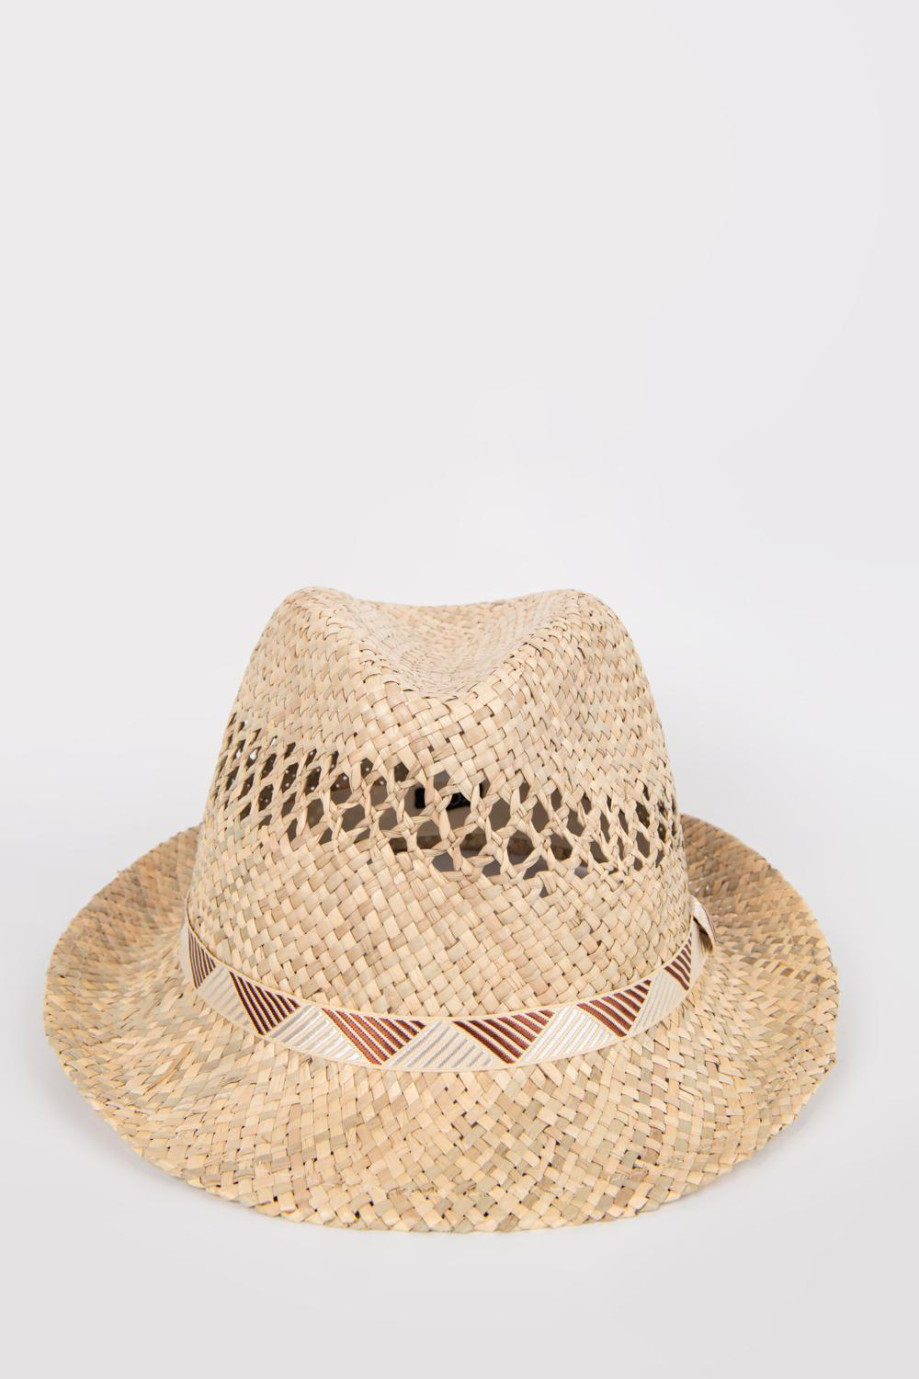 Sombrero panama crema claro con cinta y detalle de tejido abierto.